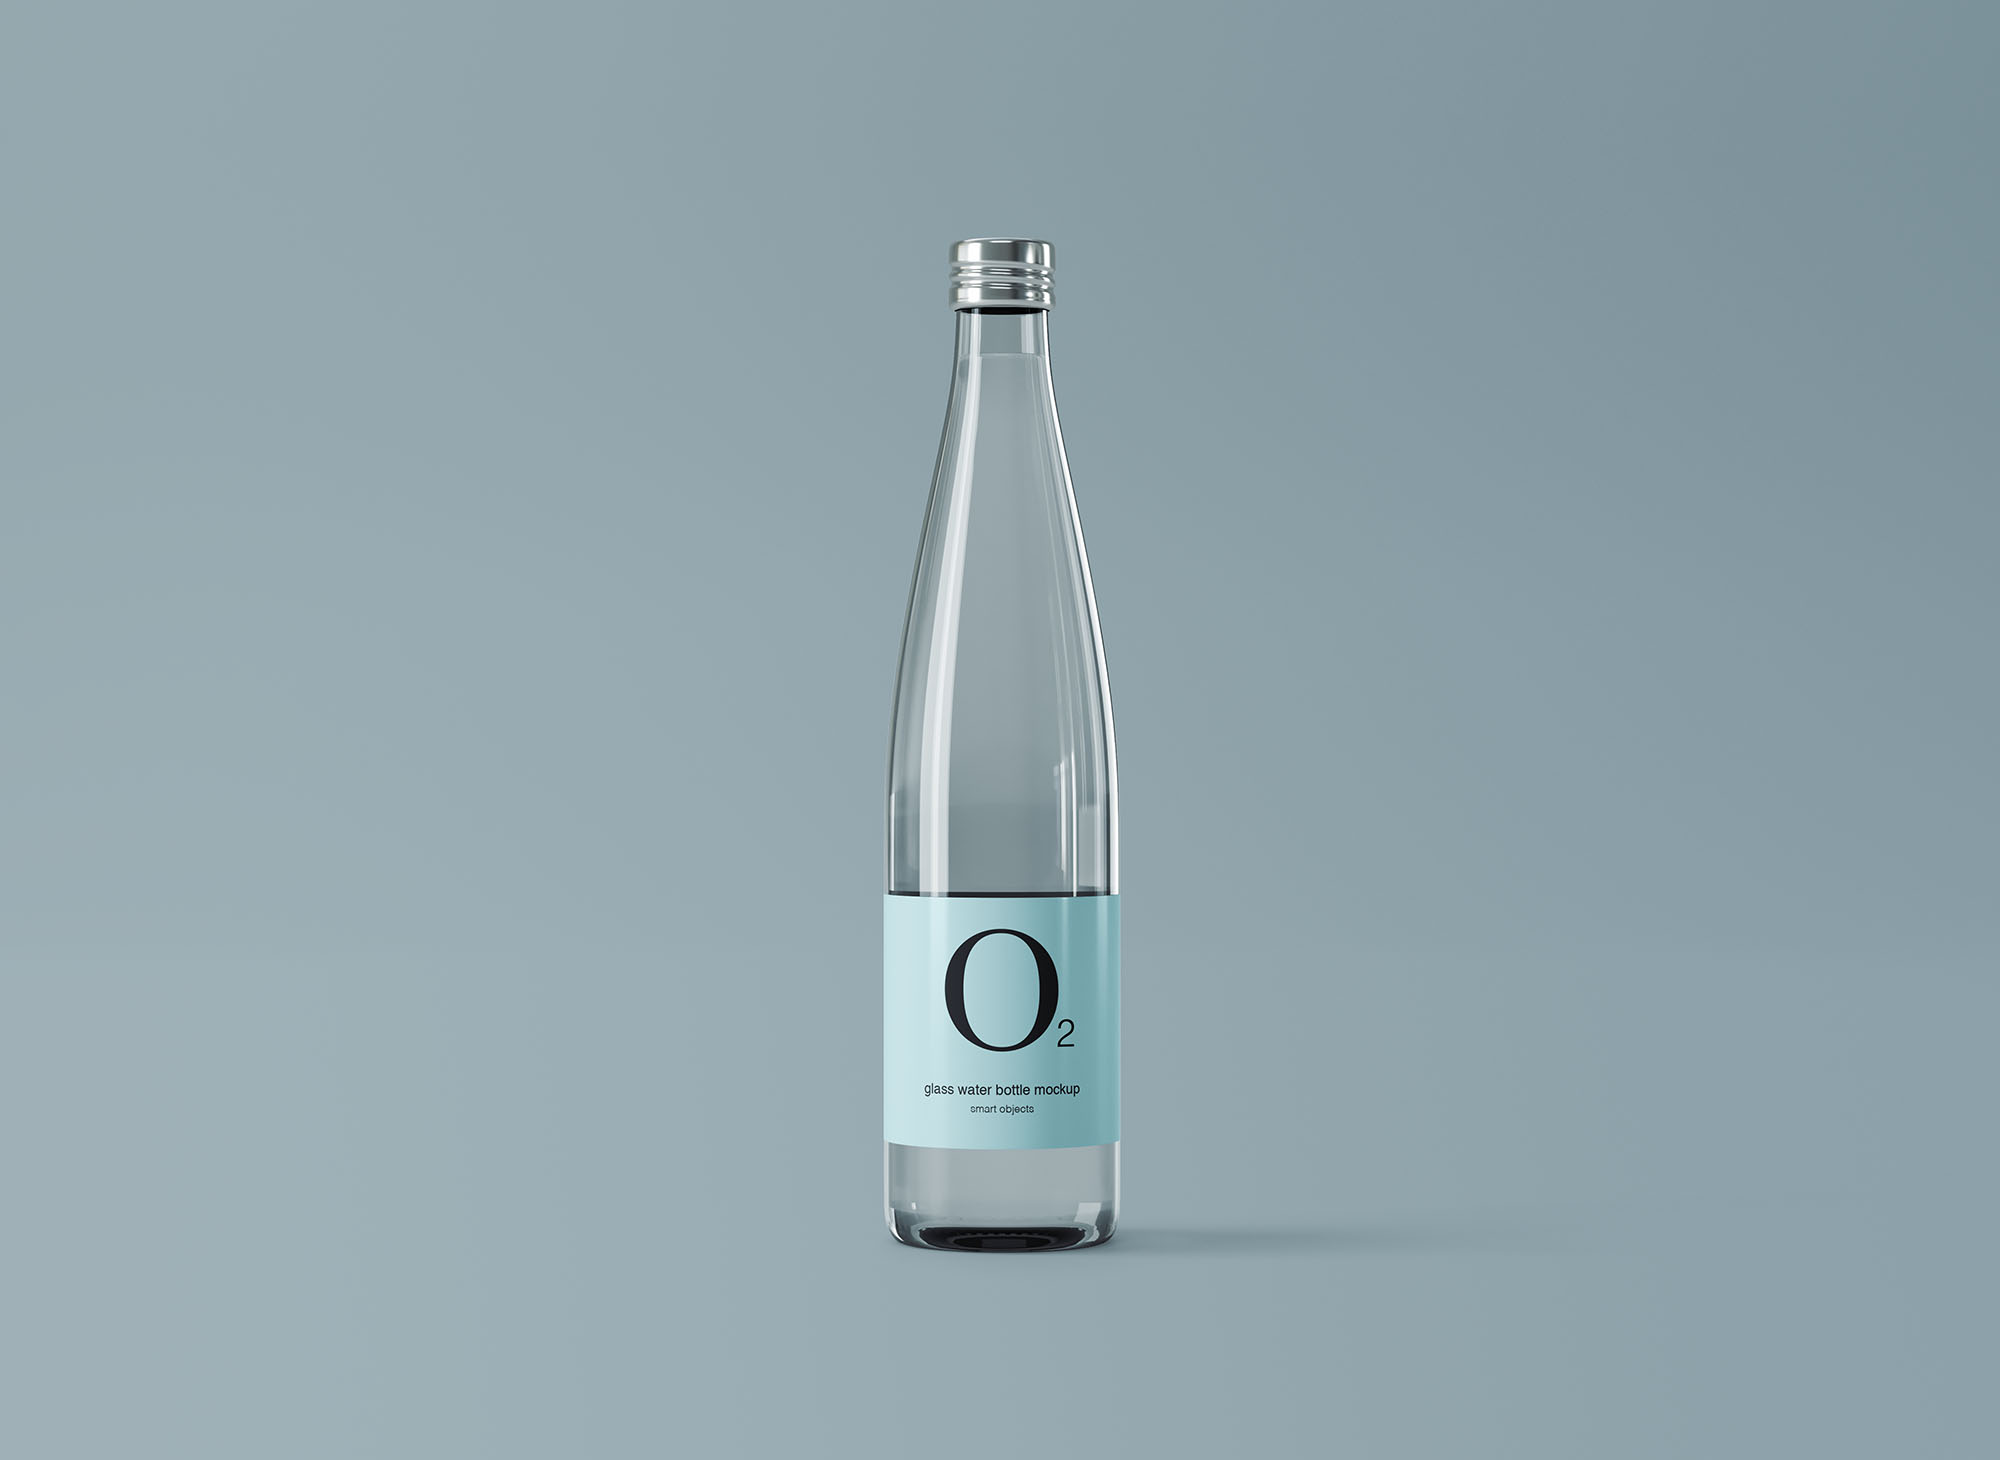 极简设计风格玻璃纯净水矿泉水瓶外观设计图素材中国精选 Minimal Glass Water Bottle Mockup插图